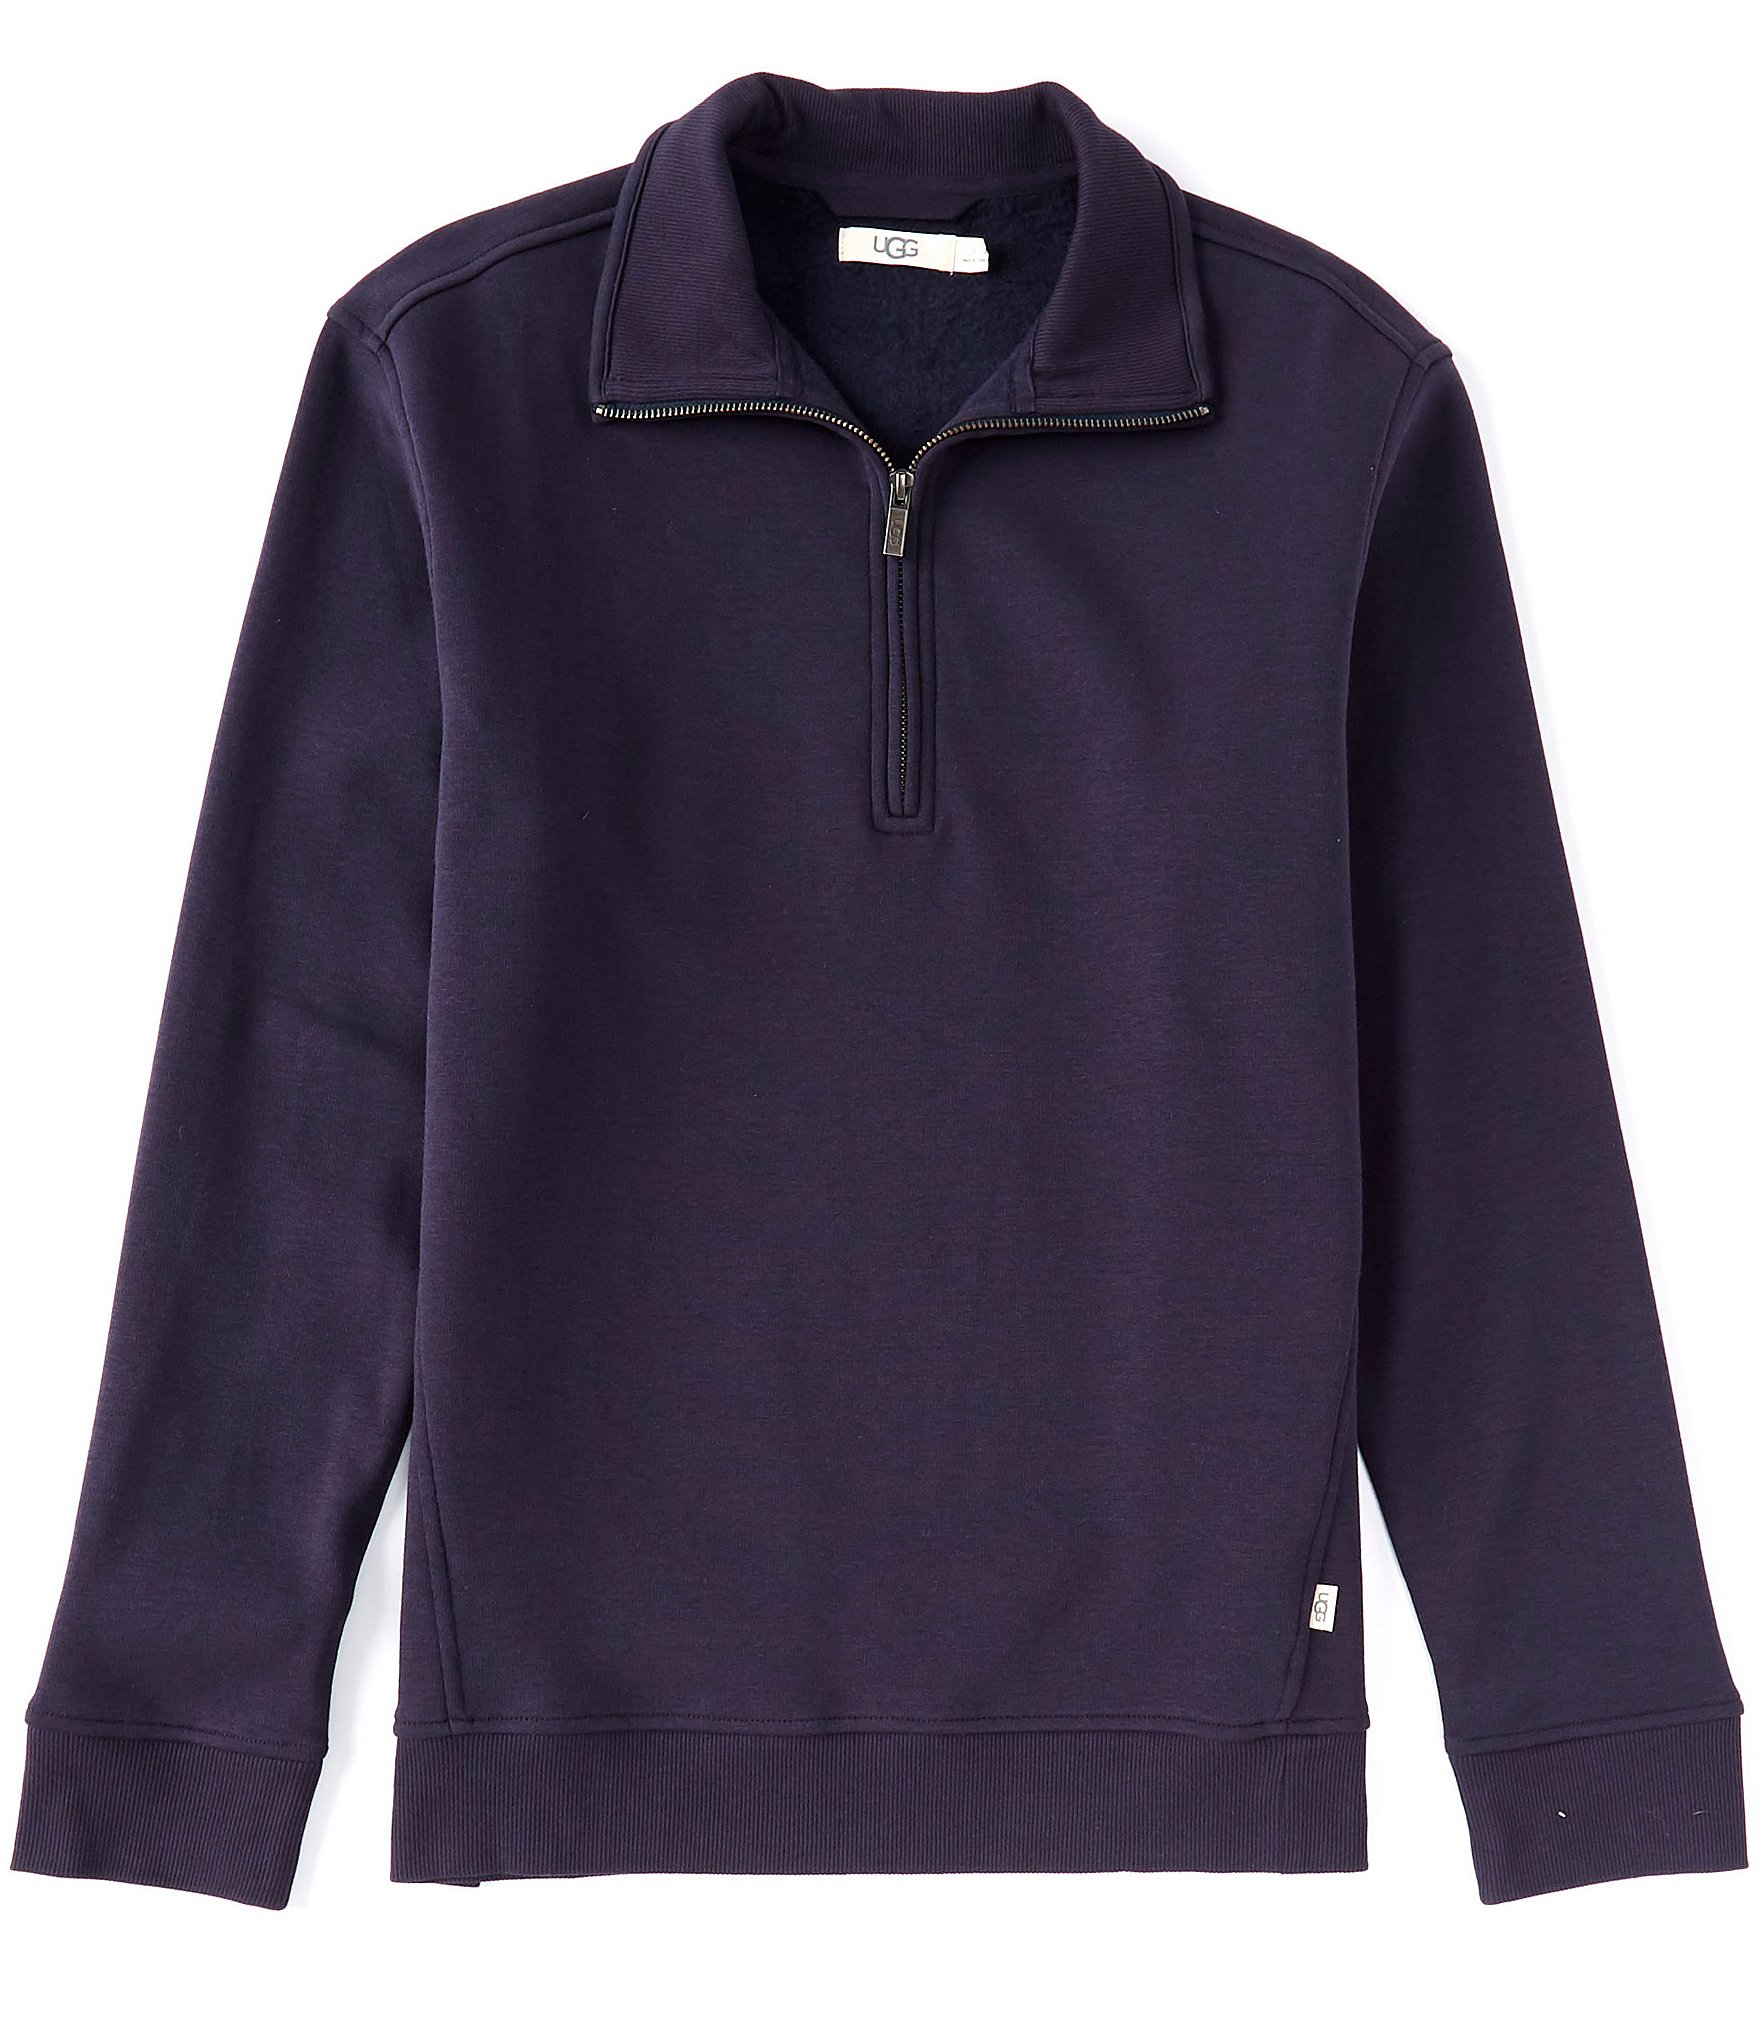 Ugg Zeke Half Zip Pullover Knit Fleece Top | Dillard's